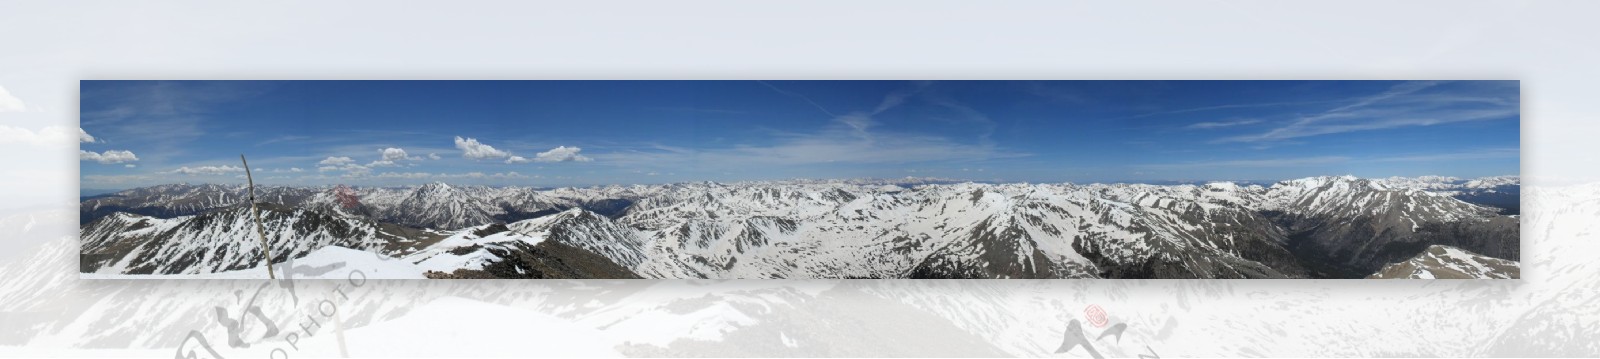 蓝天白云下白雪覆盖的群山宽幅风景图片